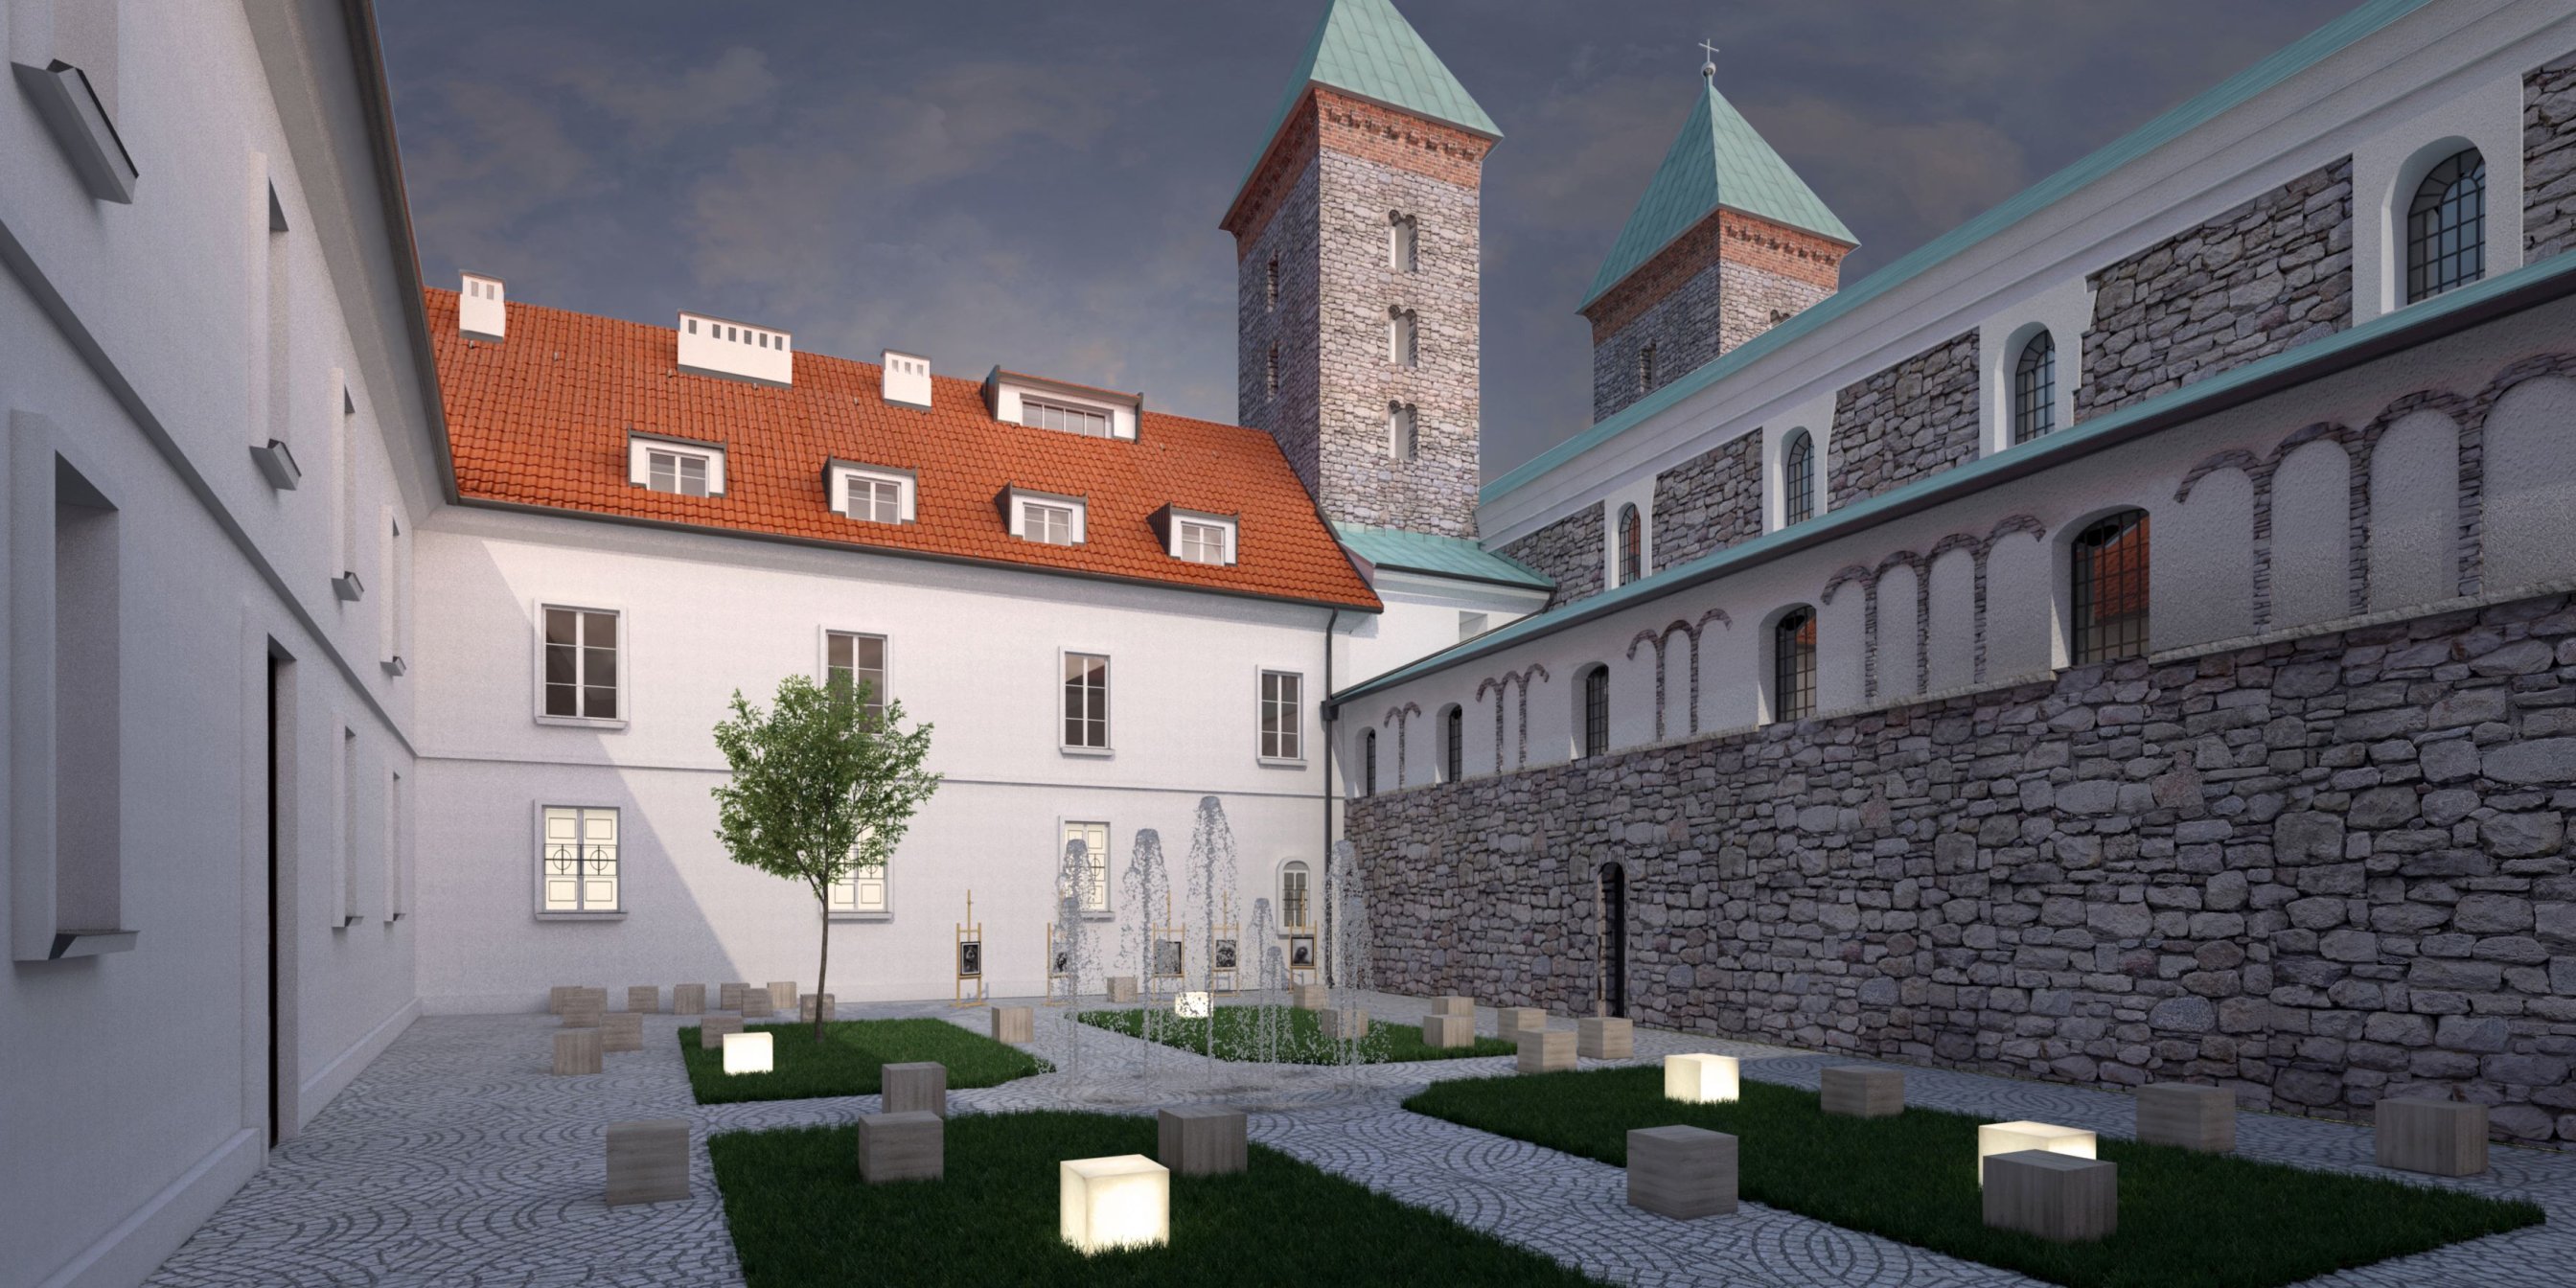 Sanktuarium Matki Bożej Pocieszenia w Czerwińsku nad Wisłą – Salezjanie – zagospodarowanie terenu wraz z nowymi budynkami